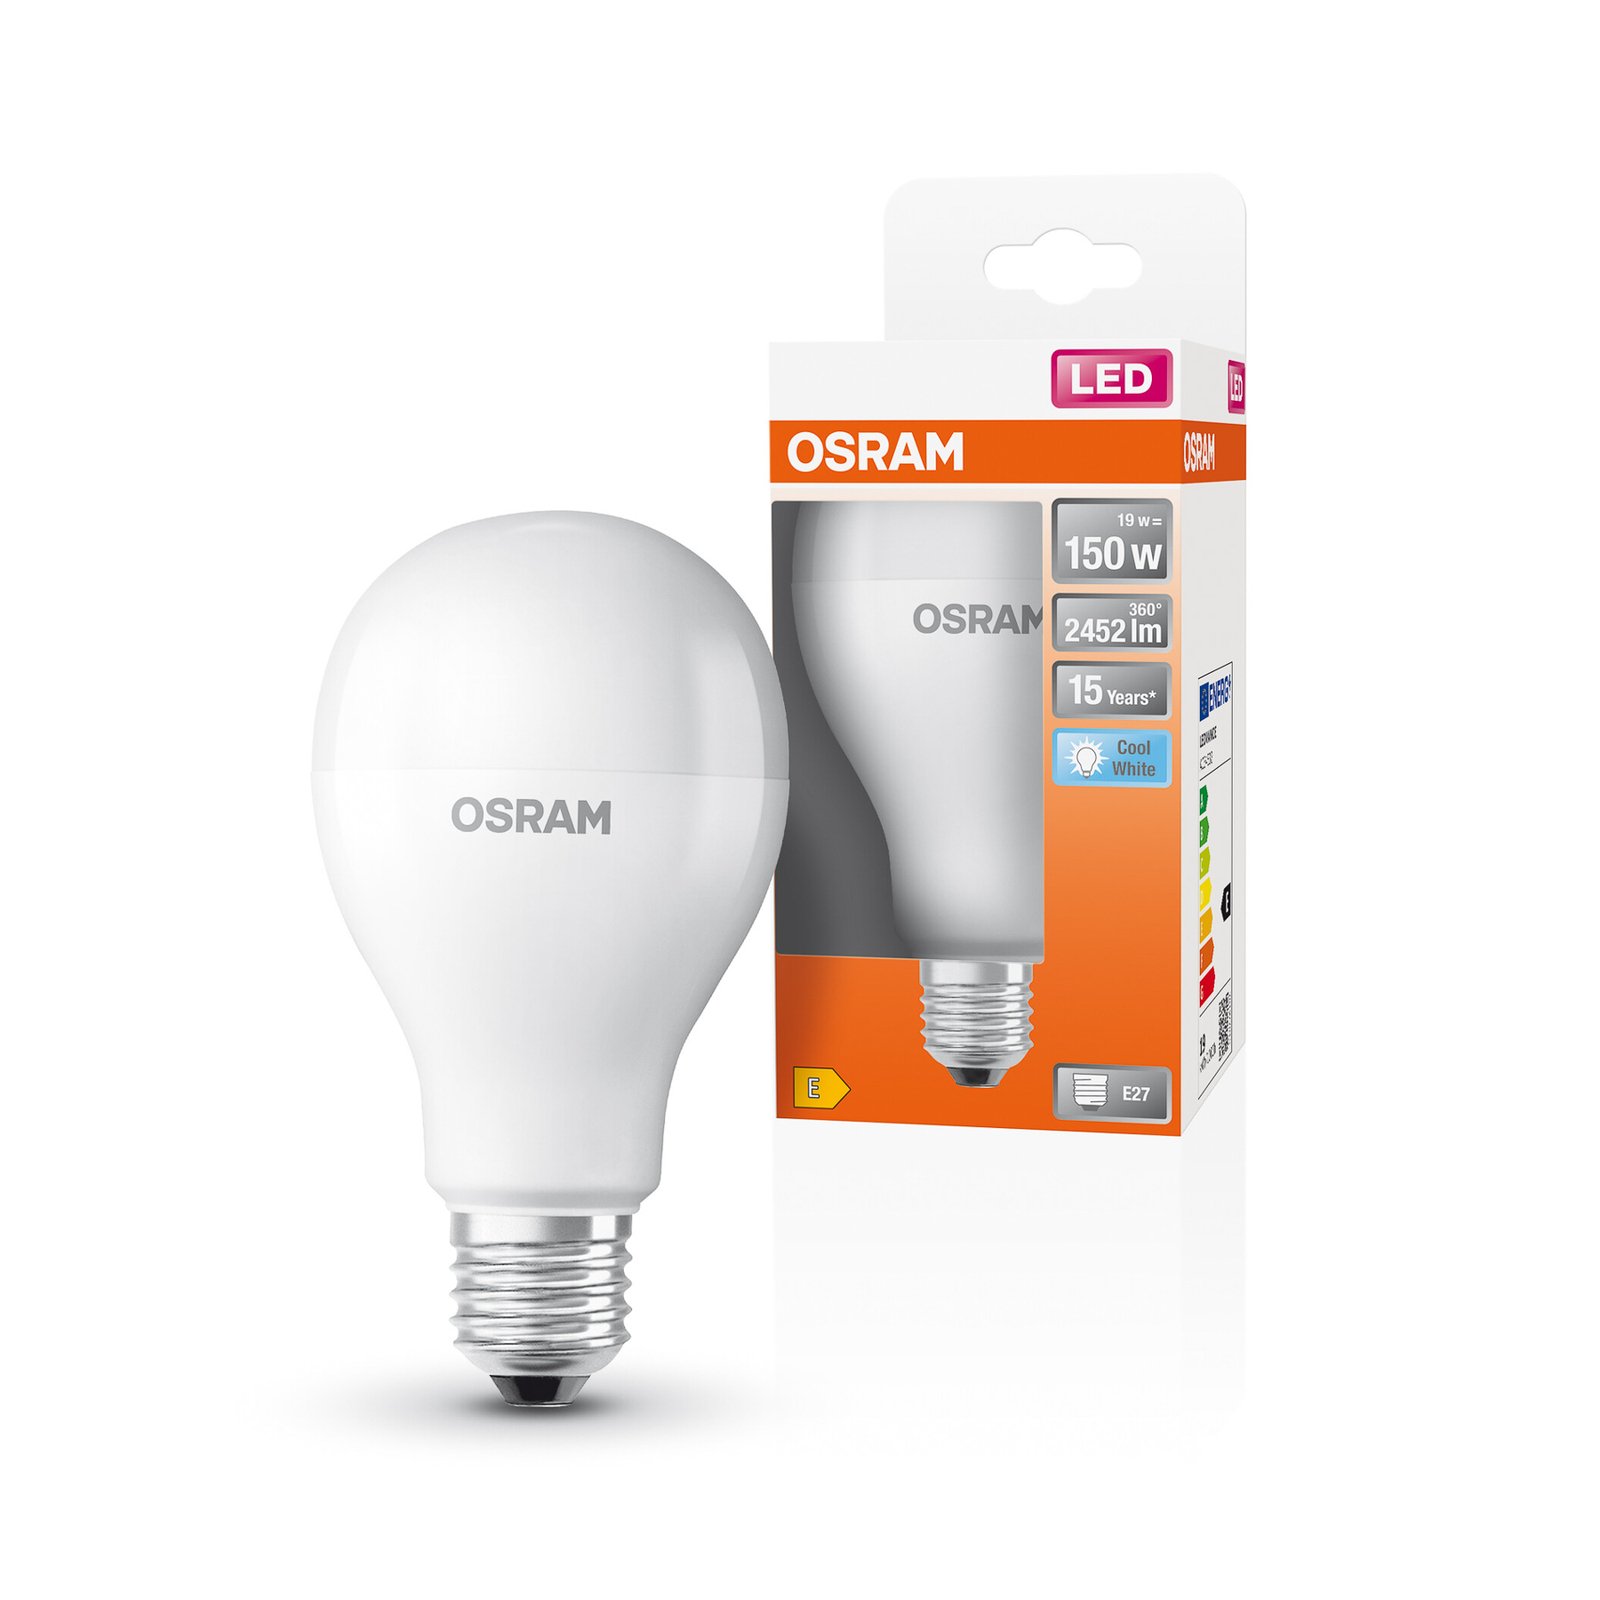 OSRAM Star LED bulb E27 19 W 2,452 lm 4,000 K matt